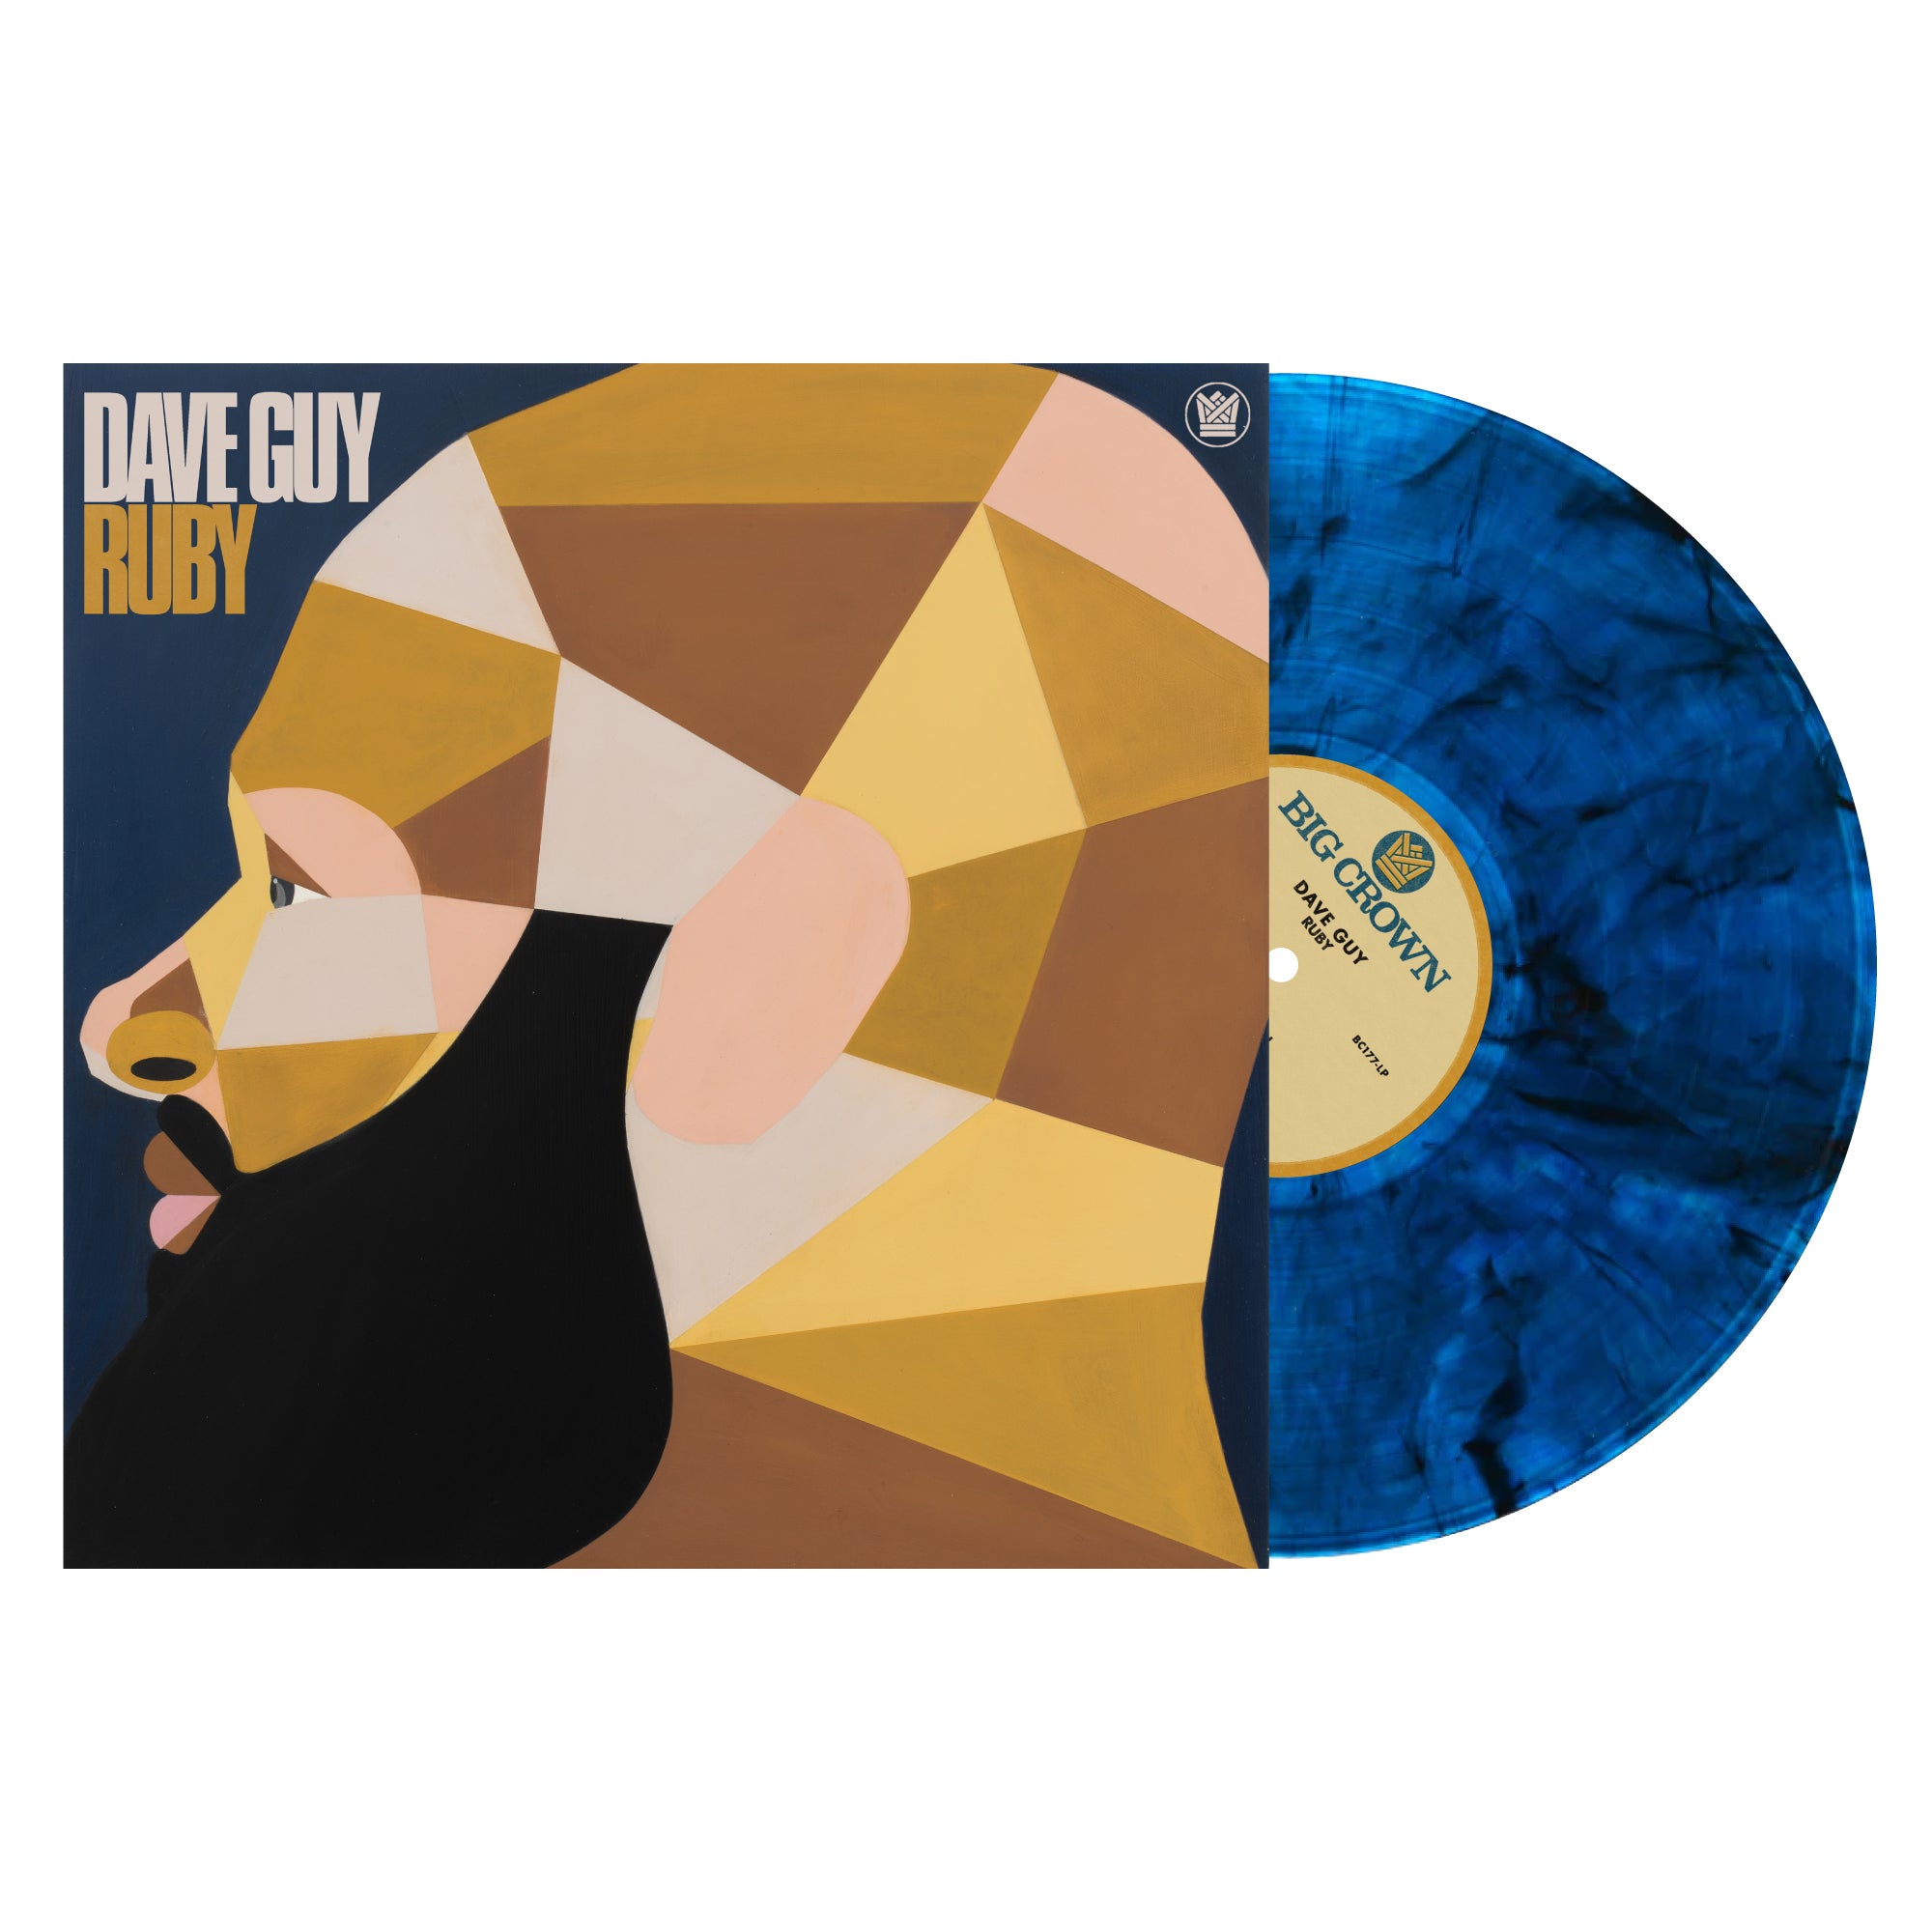 Dave Guy - Ruby (Blue Smoke Vinyl)